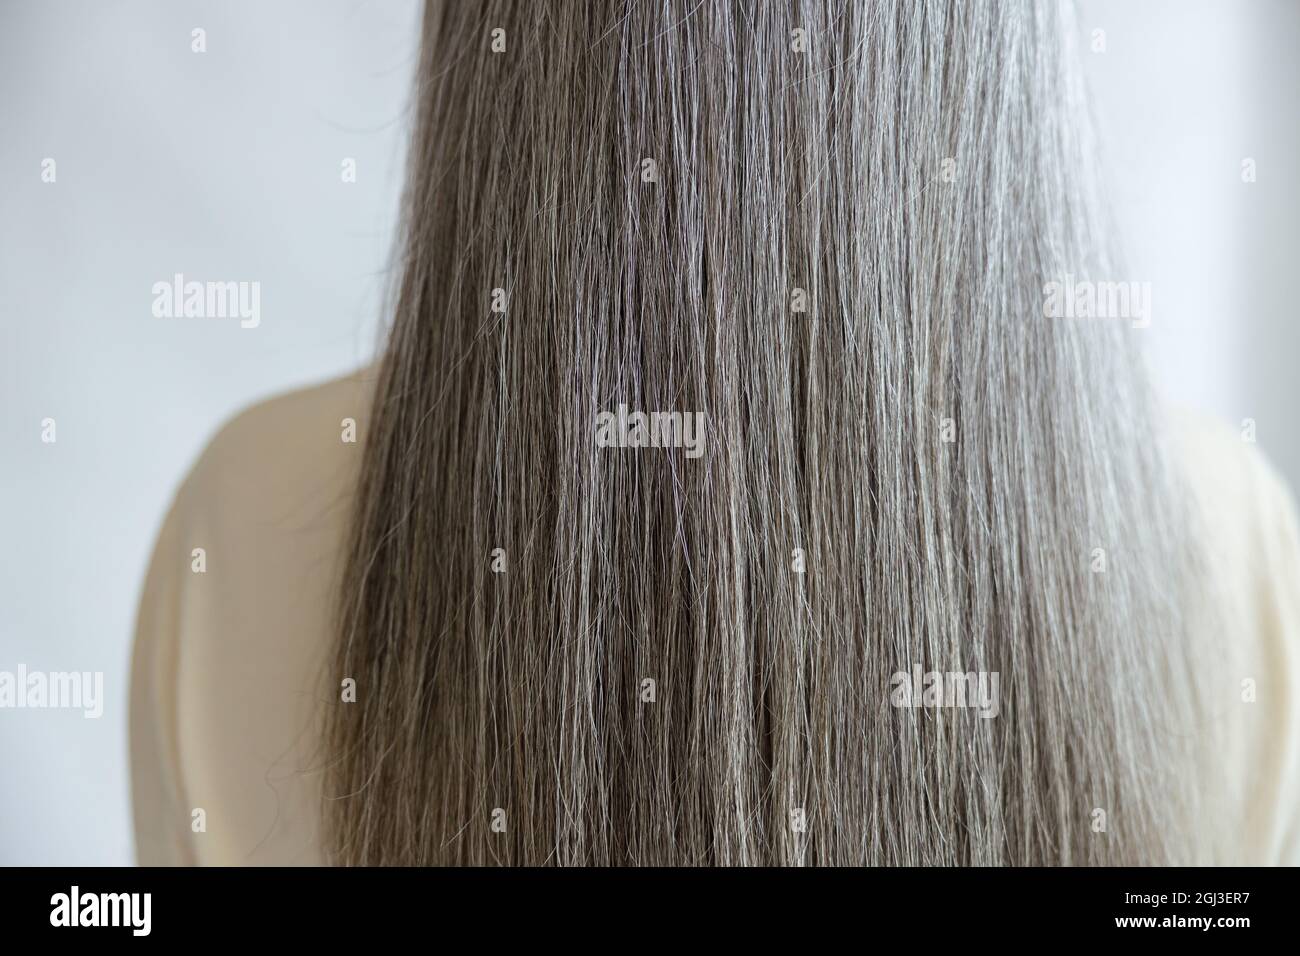 Gesunde lange gerade silberne Haare des weiblichen Modells stehen auf hellgrauem Hintergrund Stockfoto